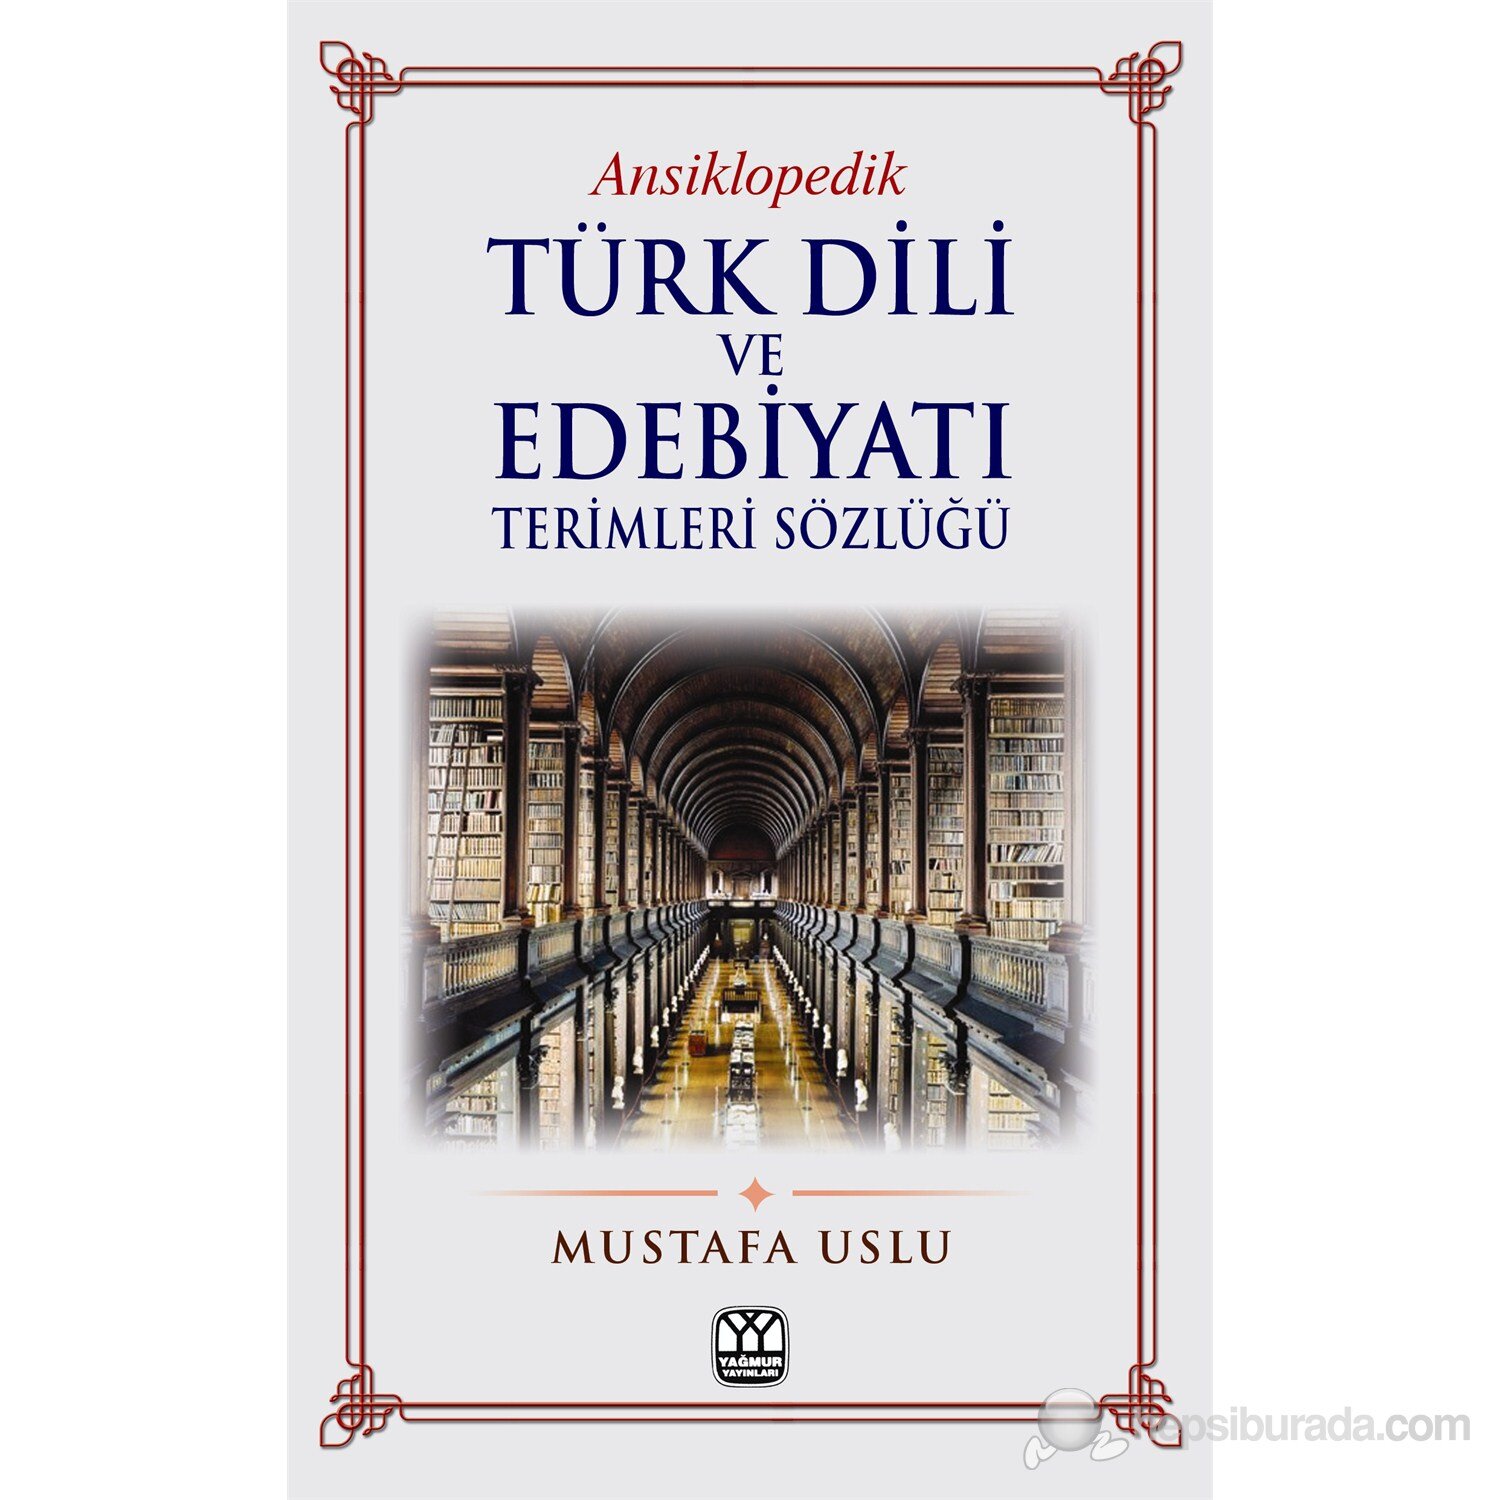 turk dili ve edebiyati terimleri sozlugu kitabi